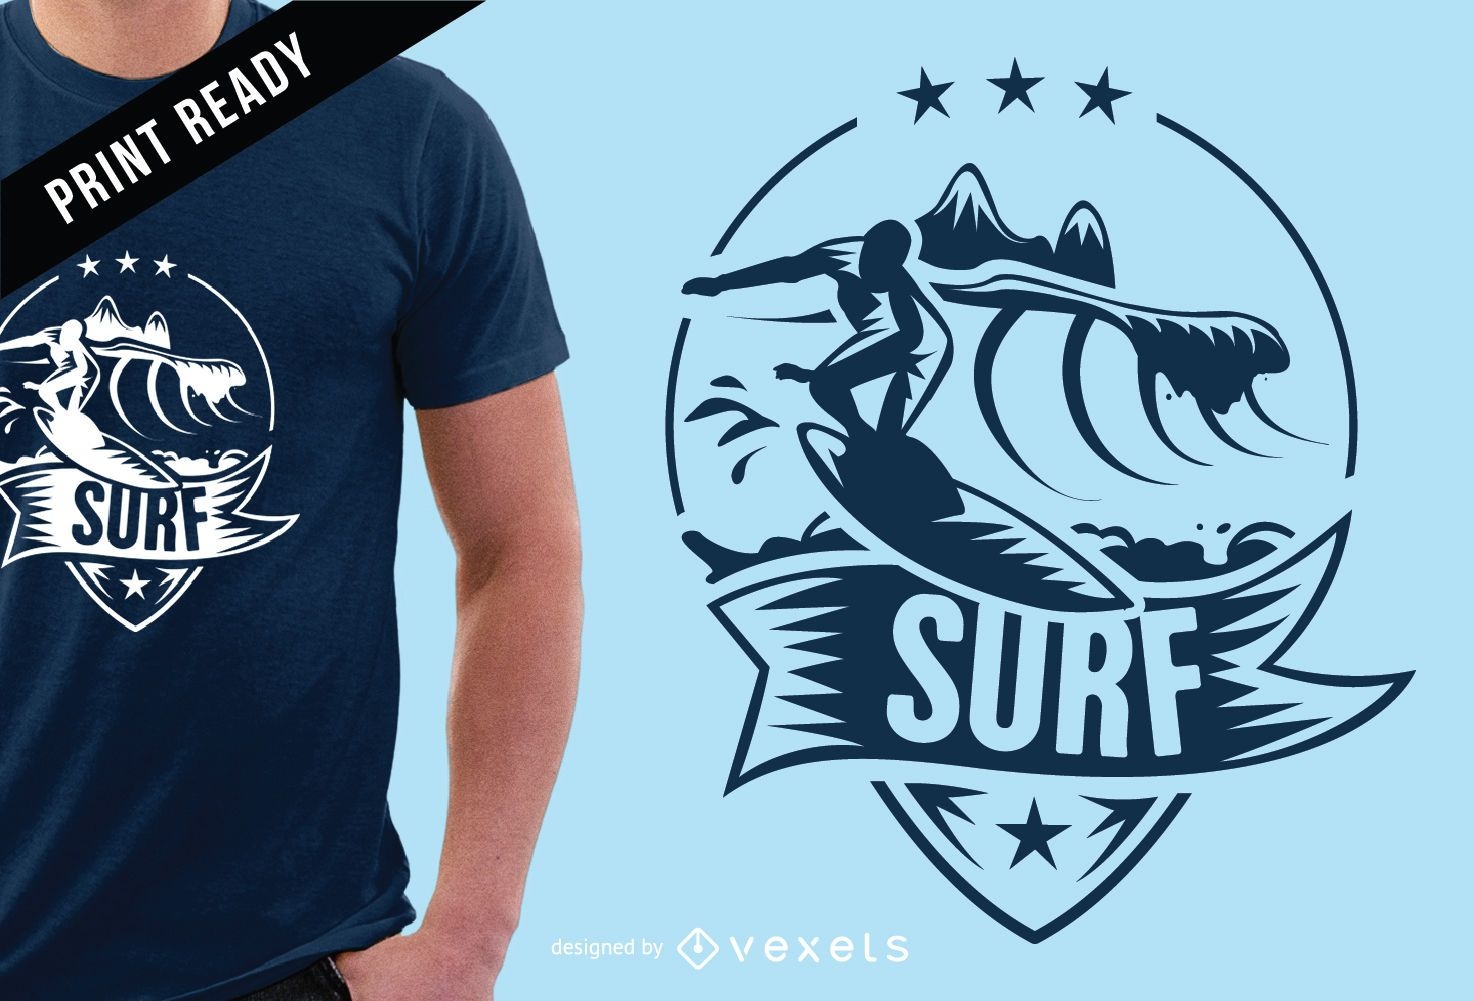 Diseño de camiseta con insignia de surf.